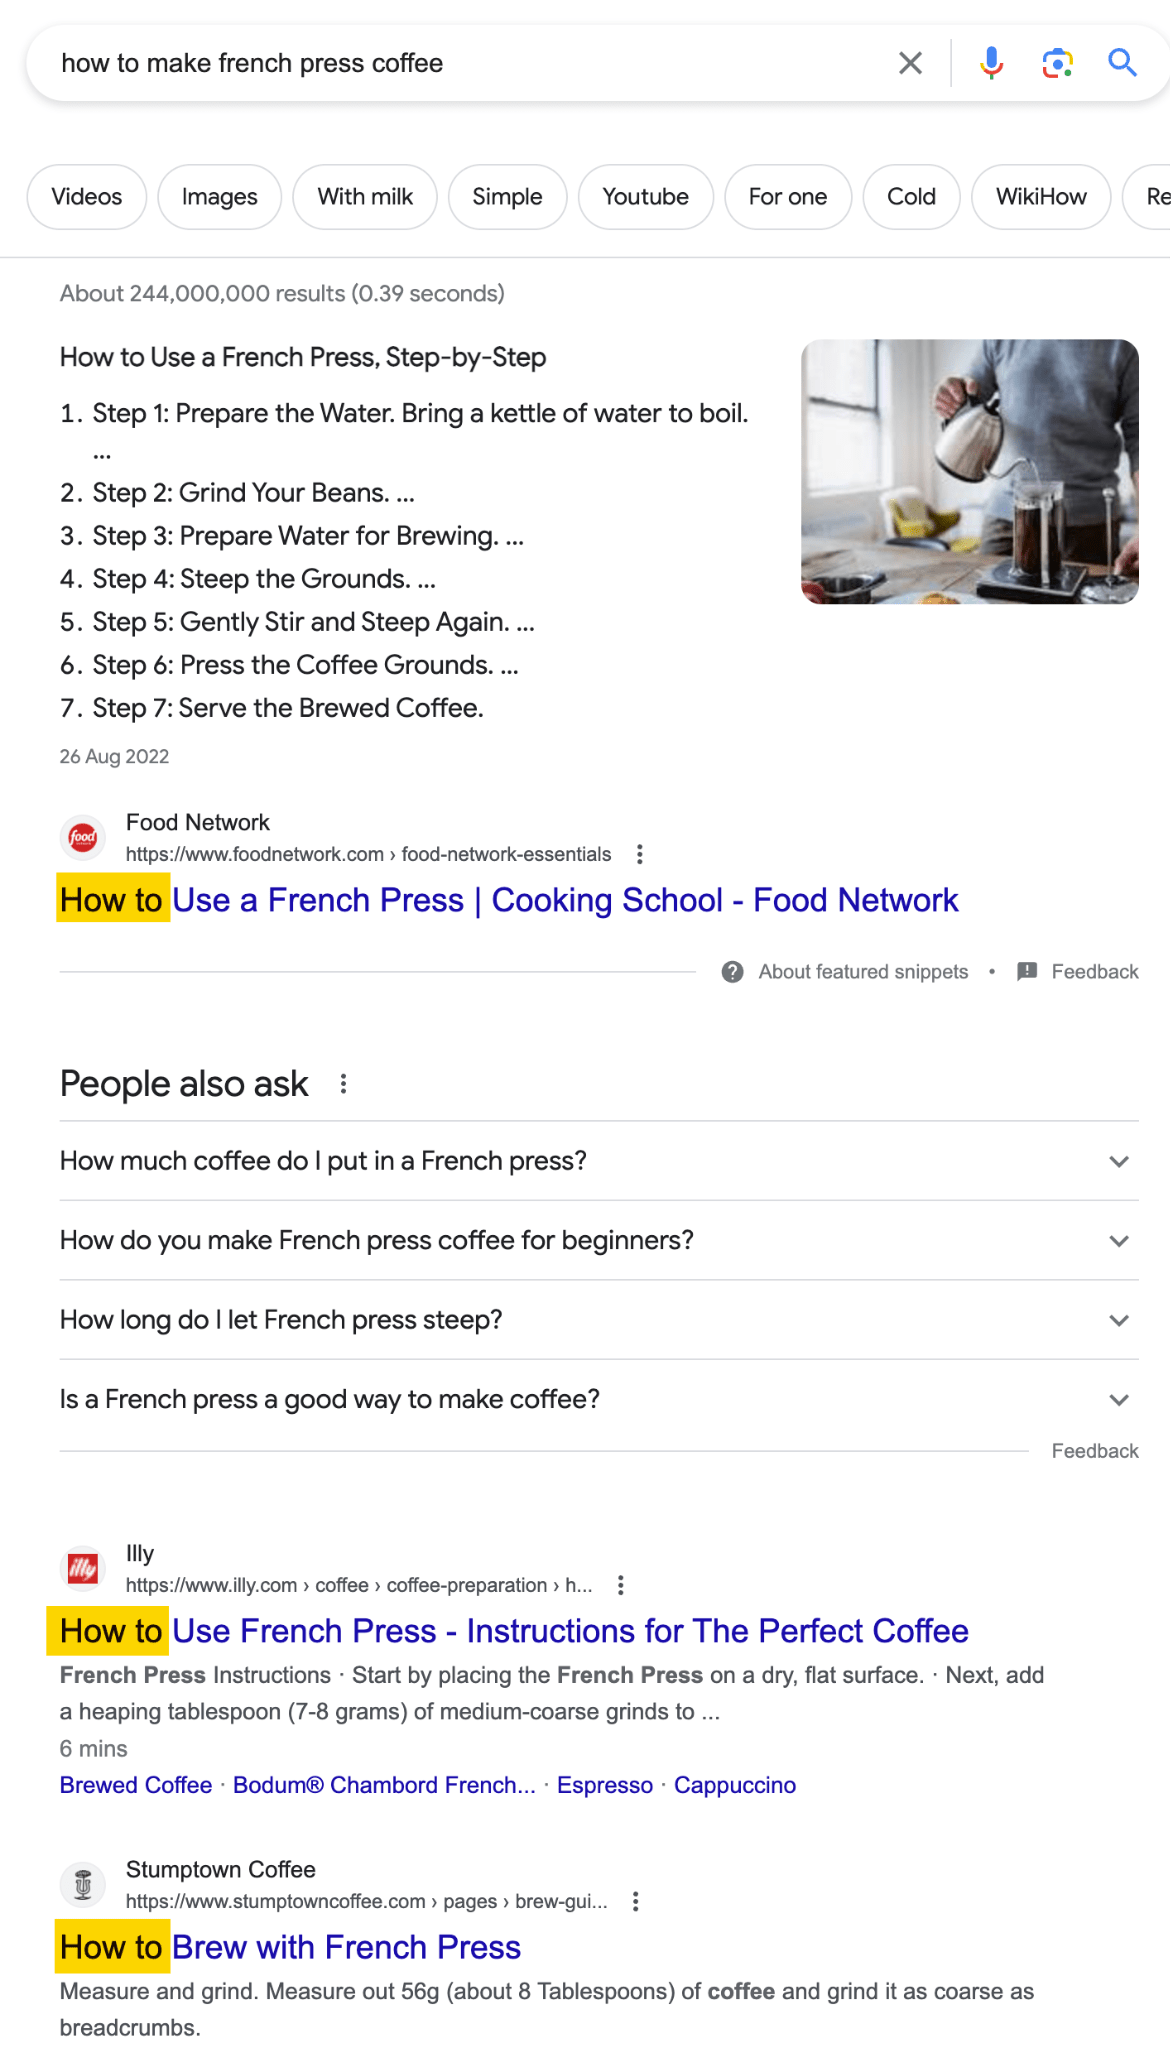 Los resultados de búsqueda de Google para "cómo hacer café de prensa francesa" muestran que los buscadores quieren una guía práctica